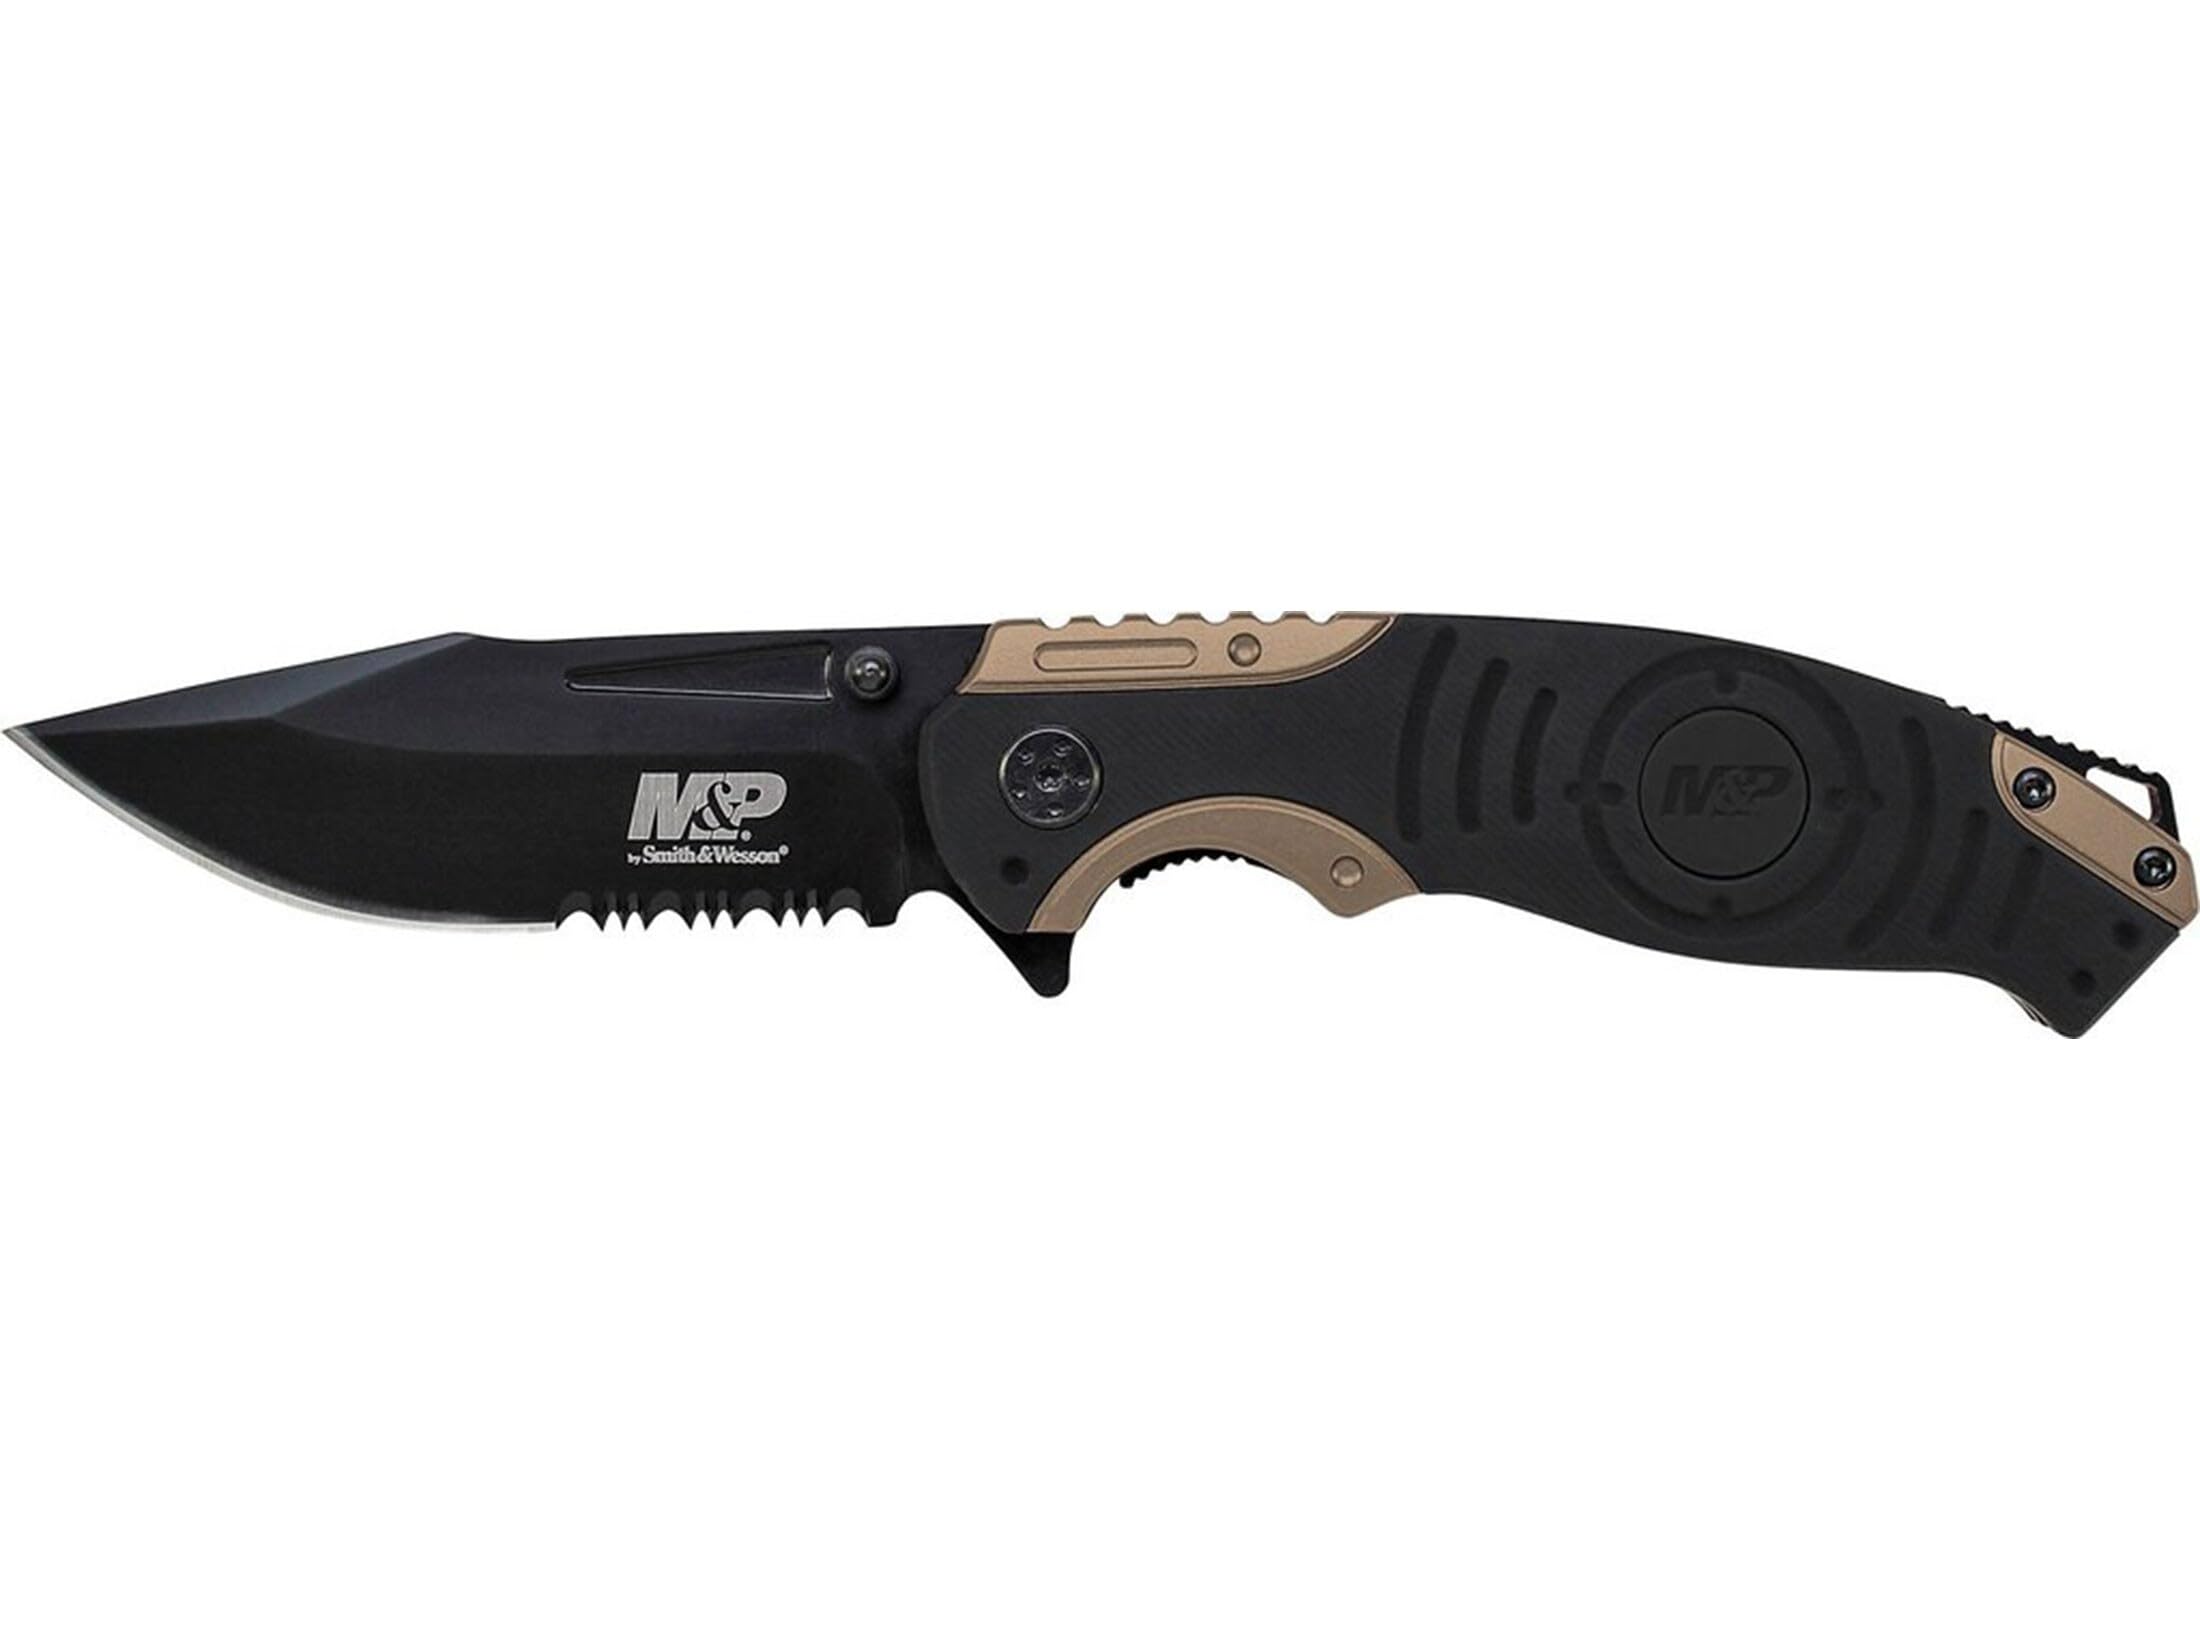 Smith & Wesson Erwachsene M und P Taschenmesser Messer, schwarz, 21 cm